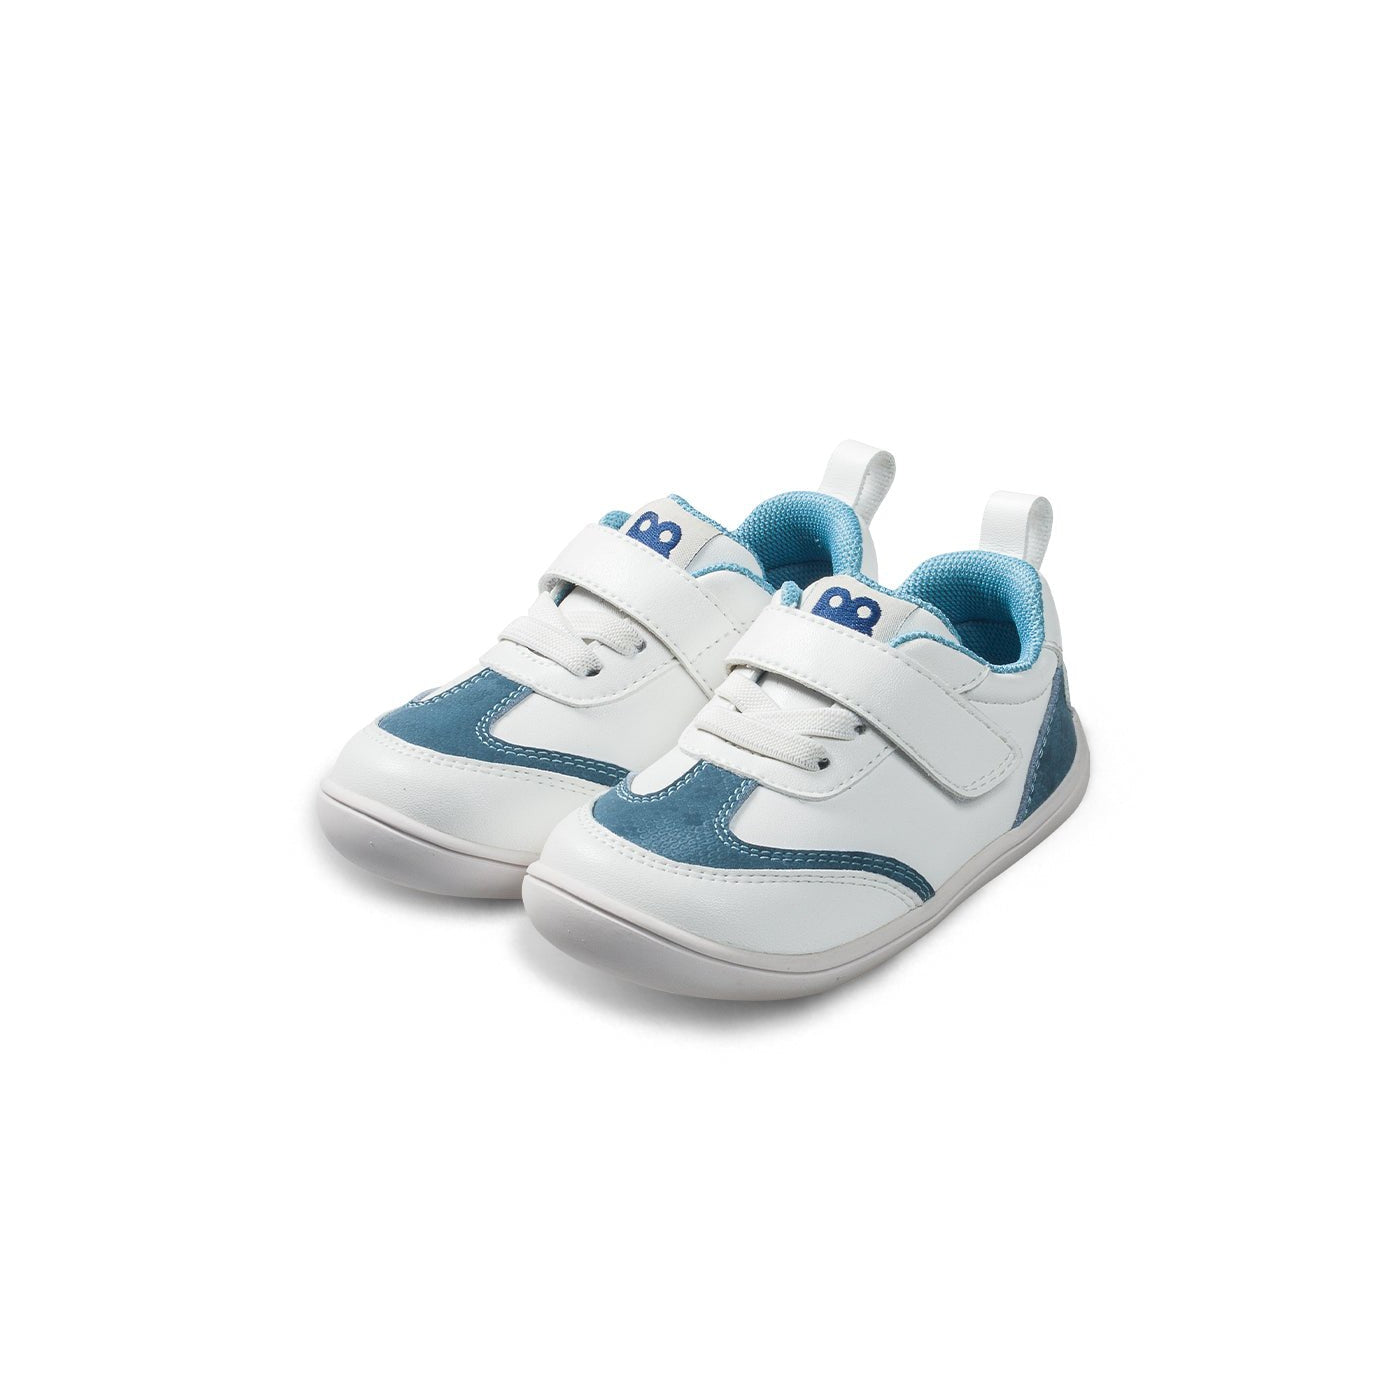 Classic All Season Soft Sole Anti-slip Pre-walker Blue Baby Boy Sneakers - 0cm